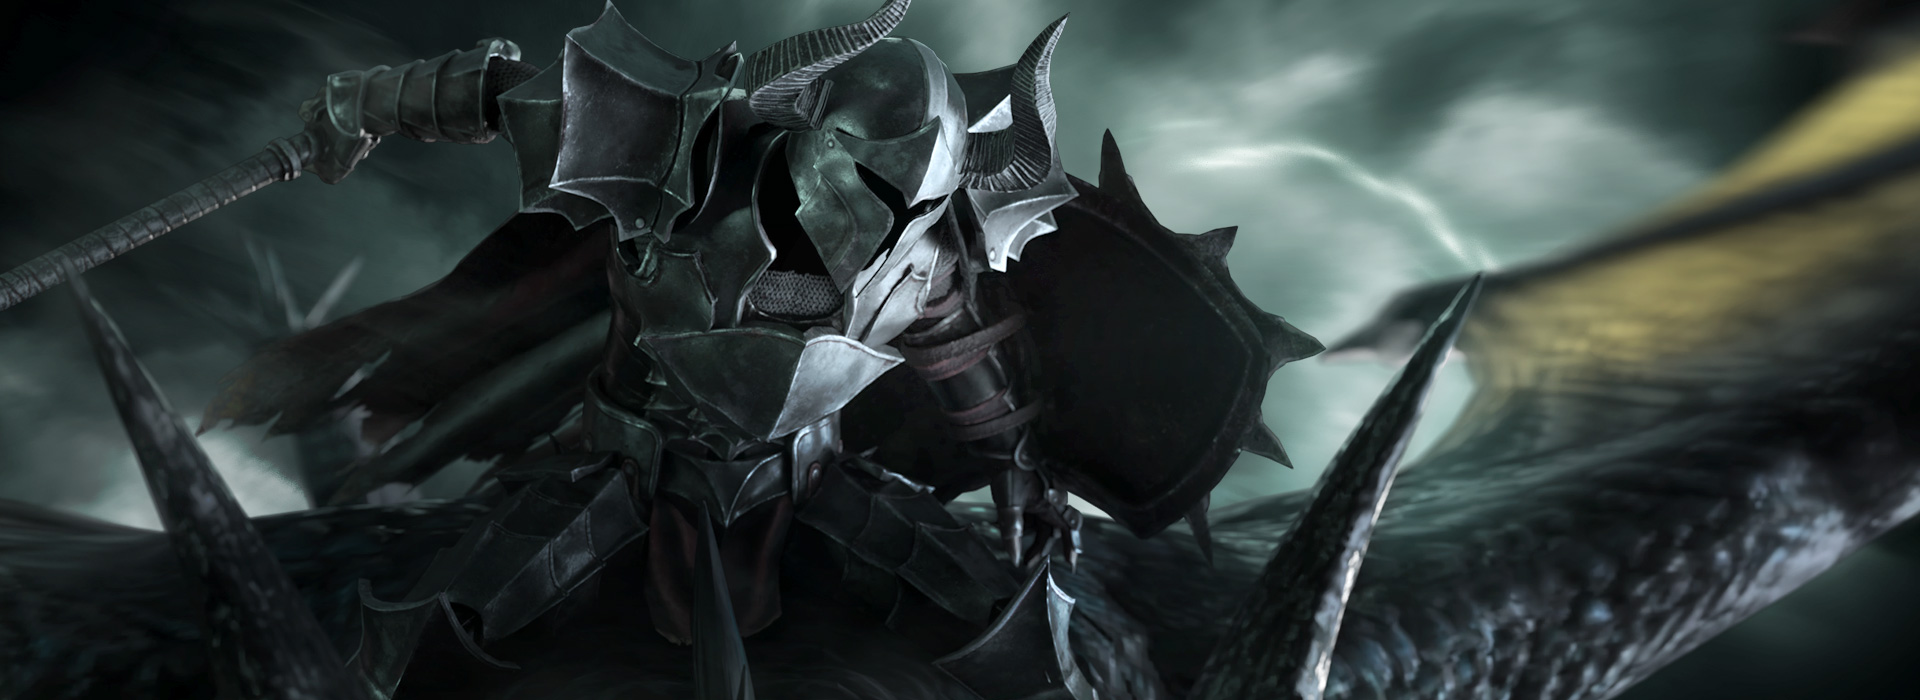 armor knight - darksider